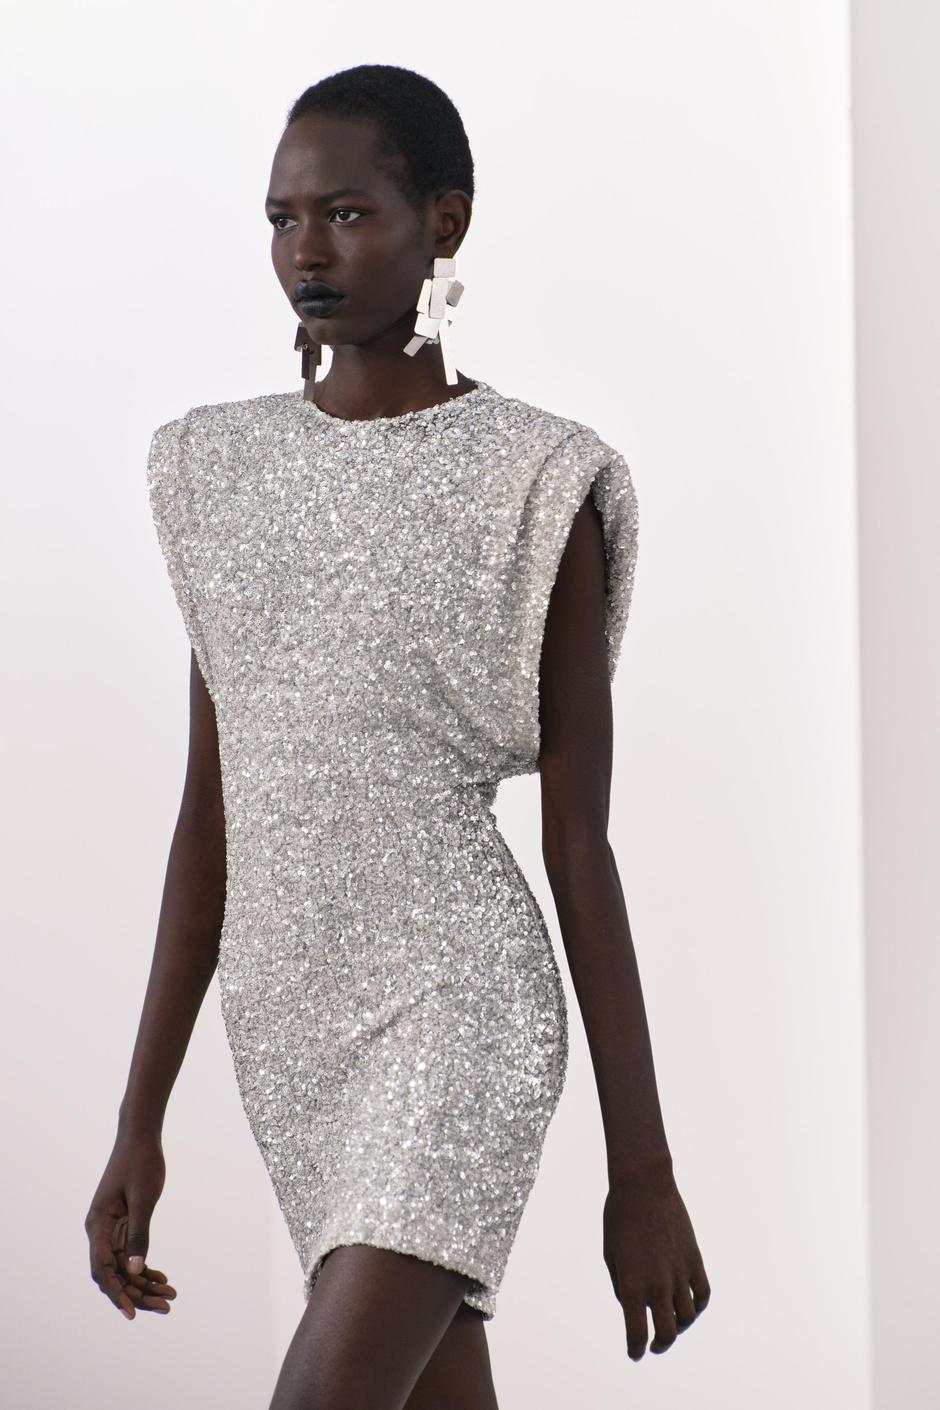 Foto: Zara, viralna haljina sa srebrnim šljokicama | Autor: Zara